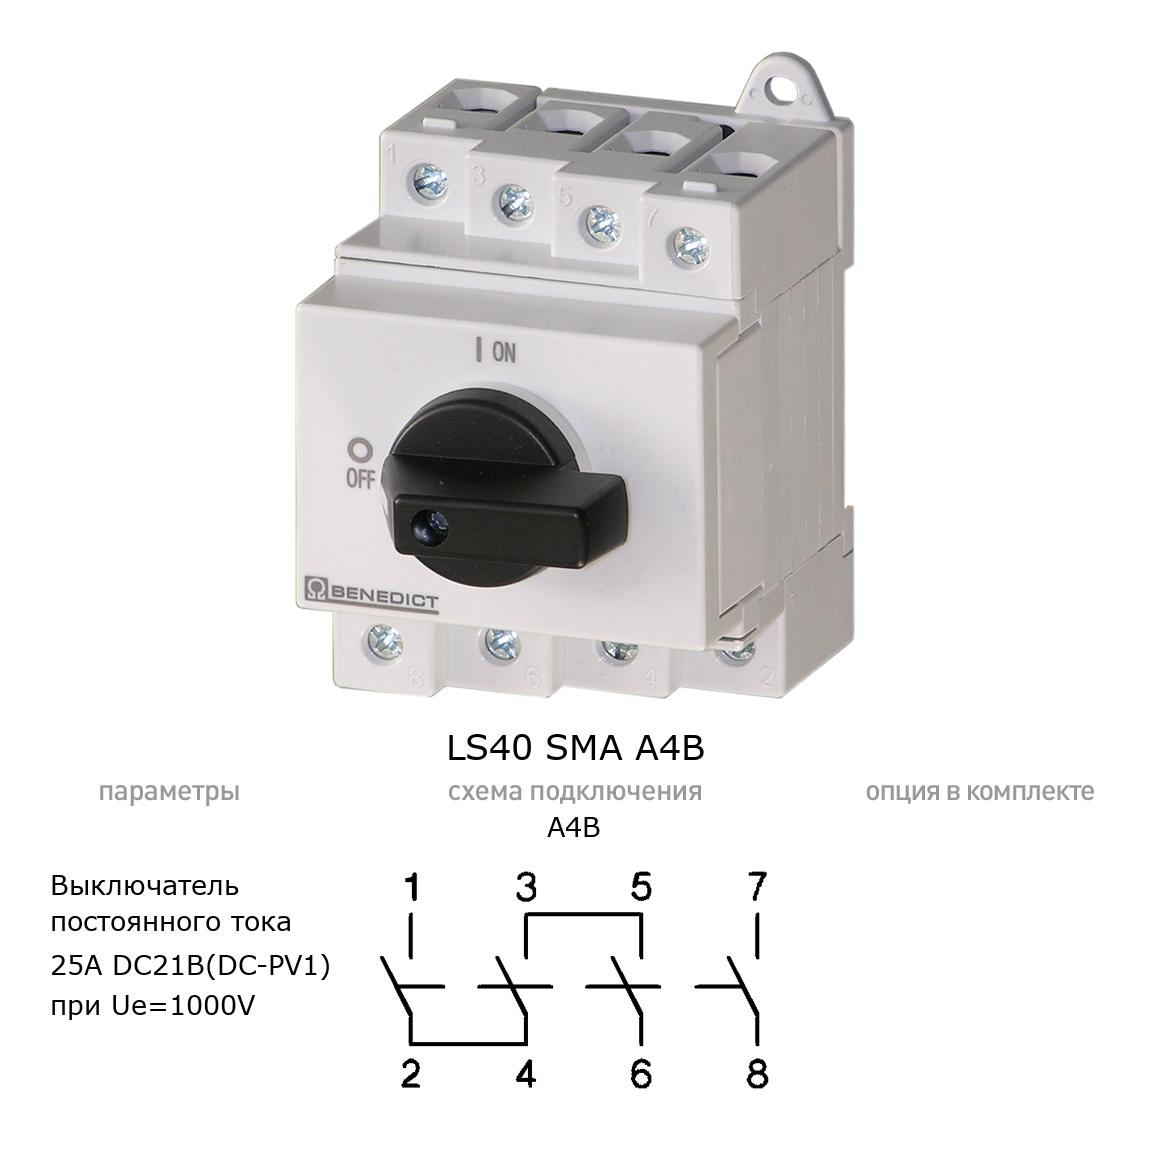 Кулачковый переключатель для постоянного тока (DC) LS40 SMA A4B BENEDICT